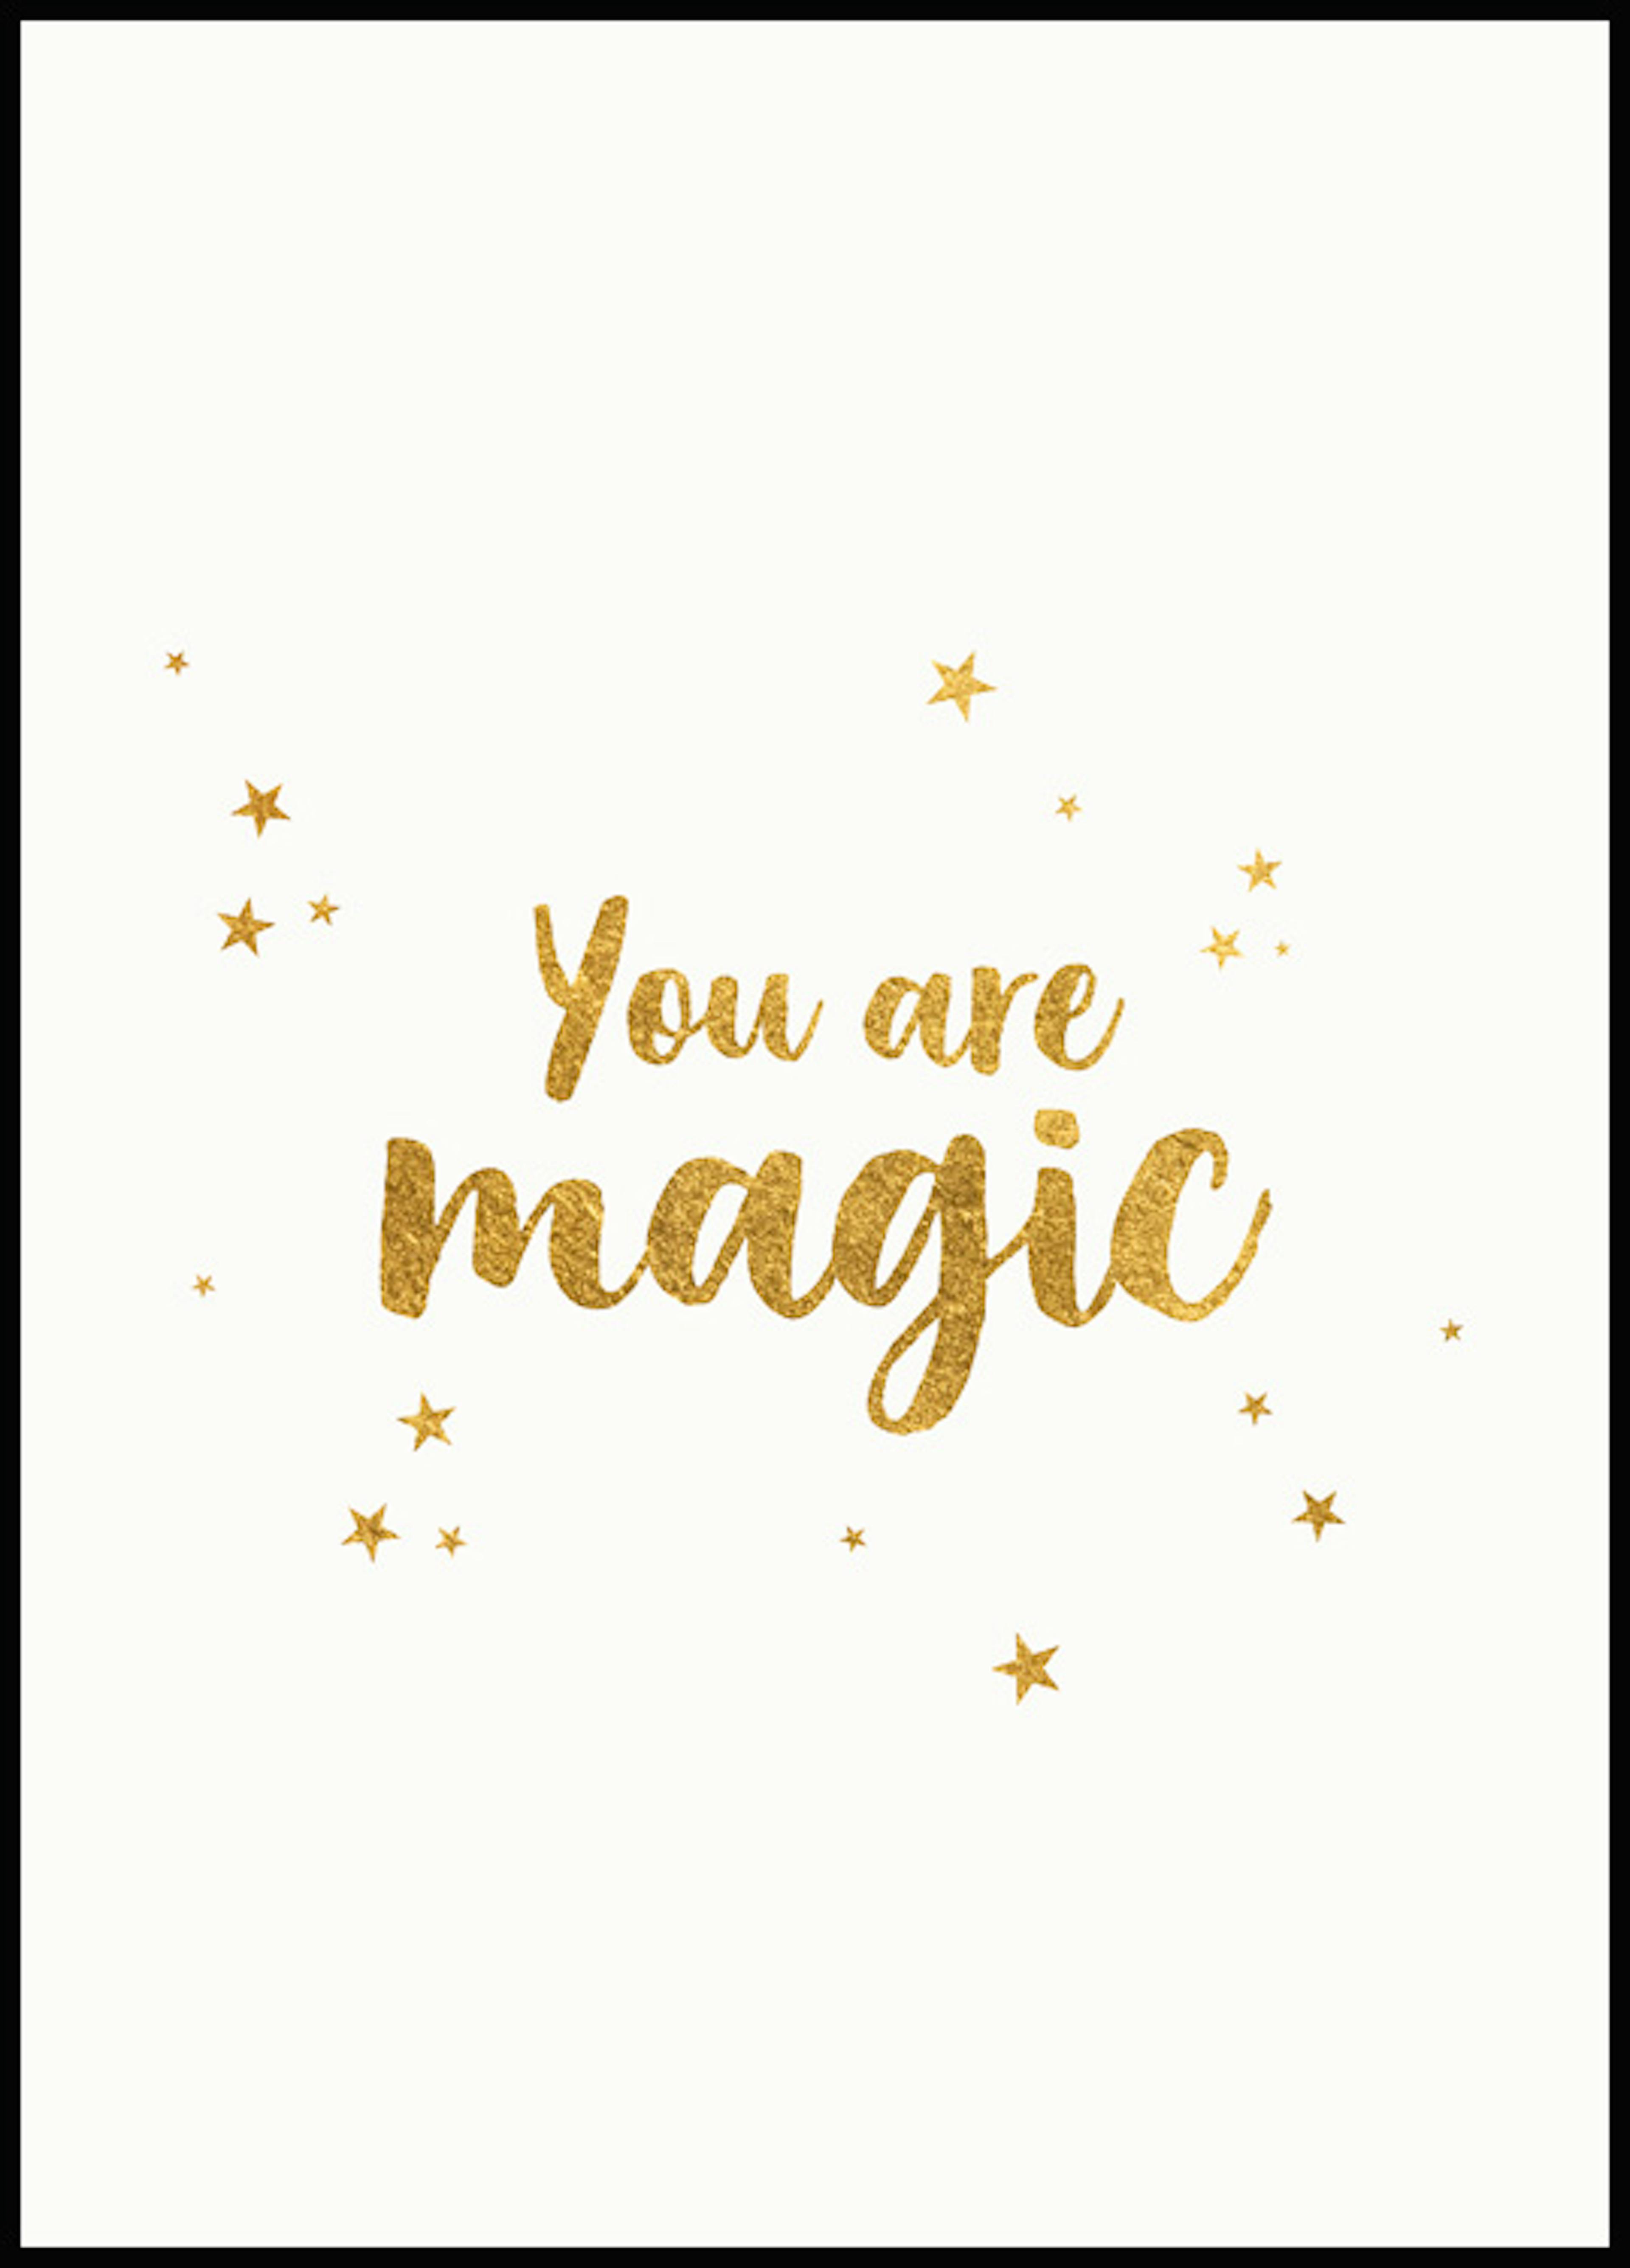 You are Magic 포스터 0